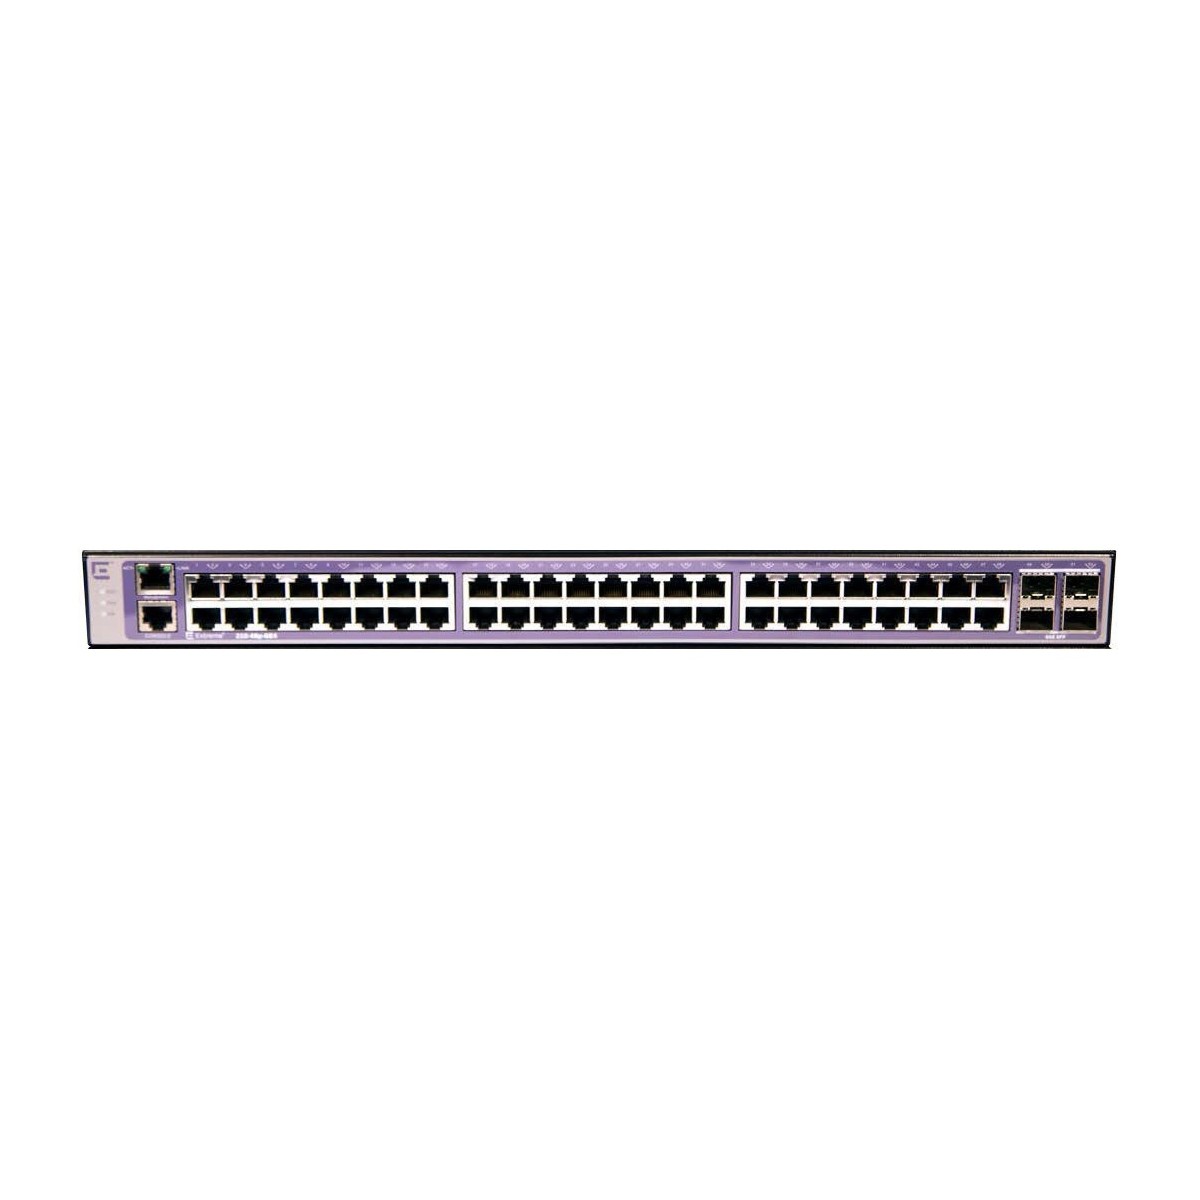 Extreme Networks 210-48p-GE4 - Managed - L2 - Gigabit Ethernet (10/100/1000) - Power over Ethernet (PoE) - Rack mounting - 1U